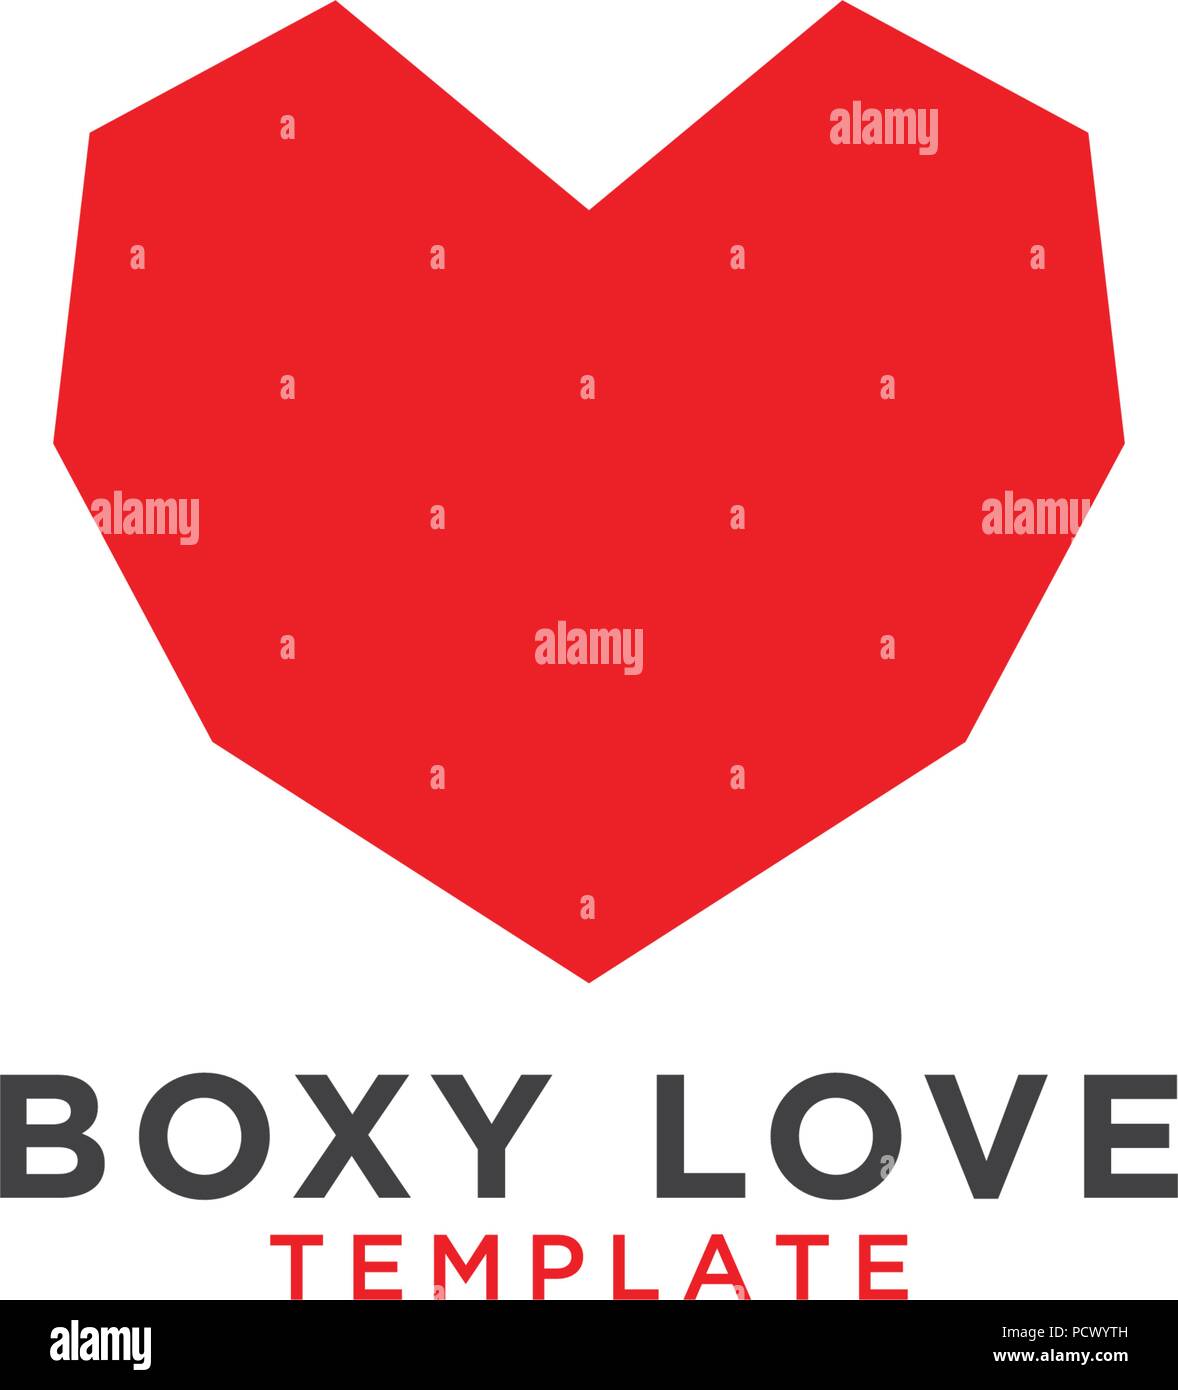 Illustrazione di boxy amore graphic design template Illustrazione Vettoriale